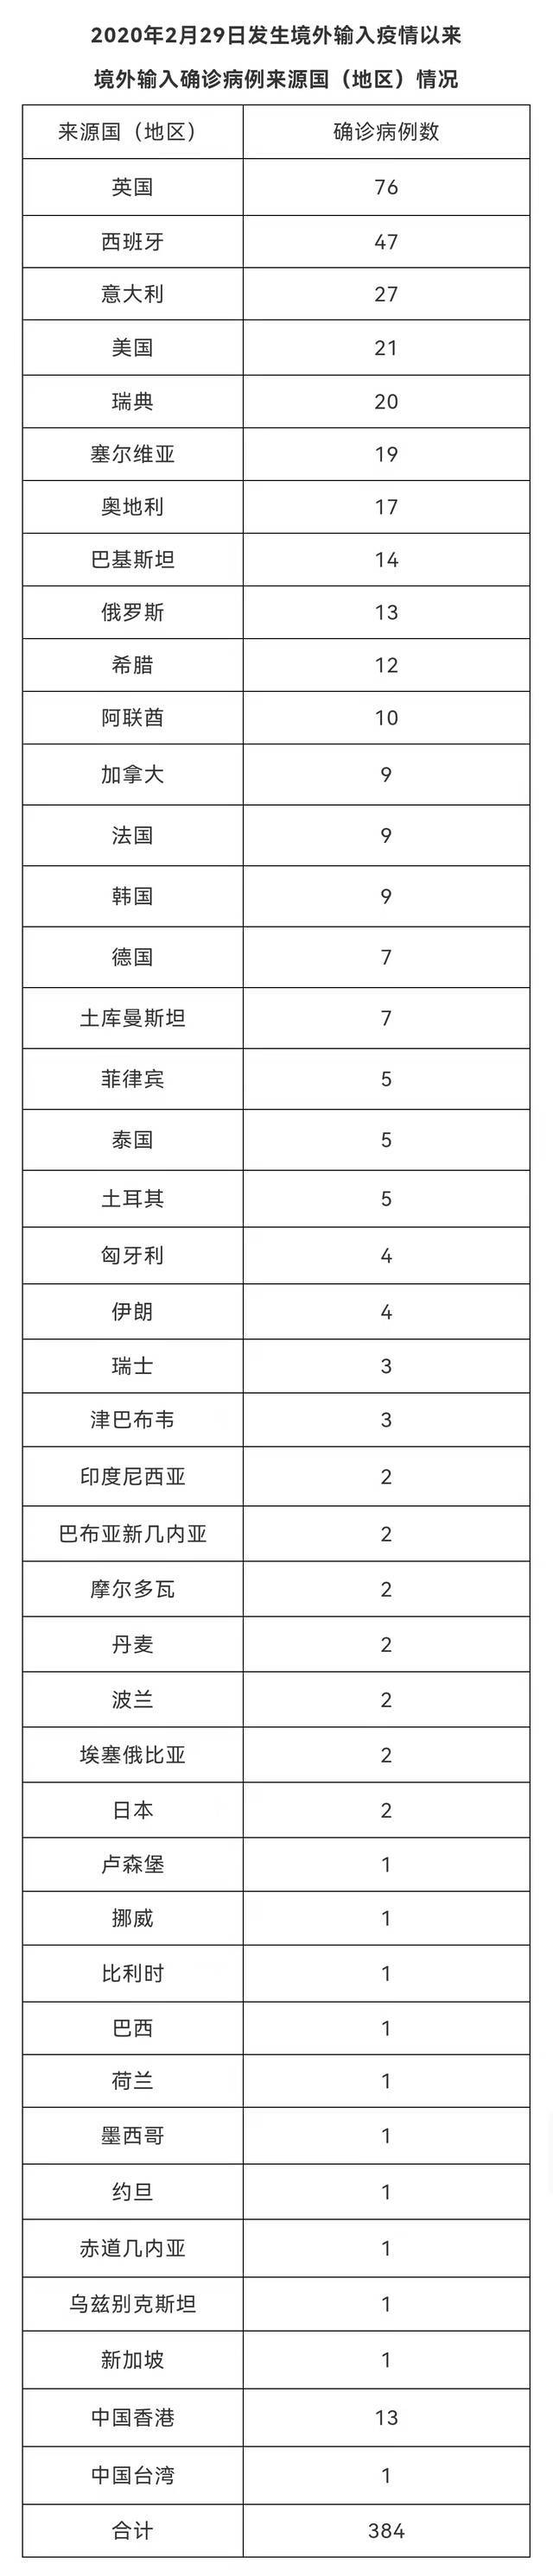 北京2月19日新增6例境外输入确诊病例 治愈出院3例